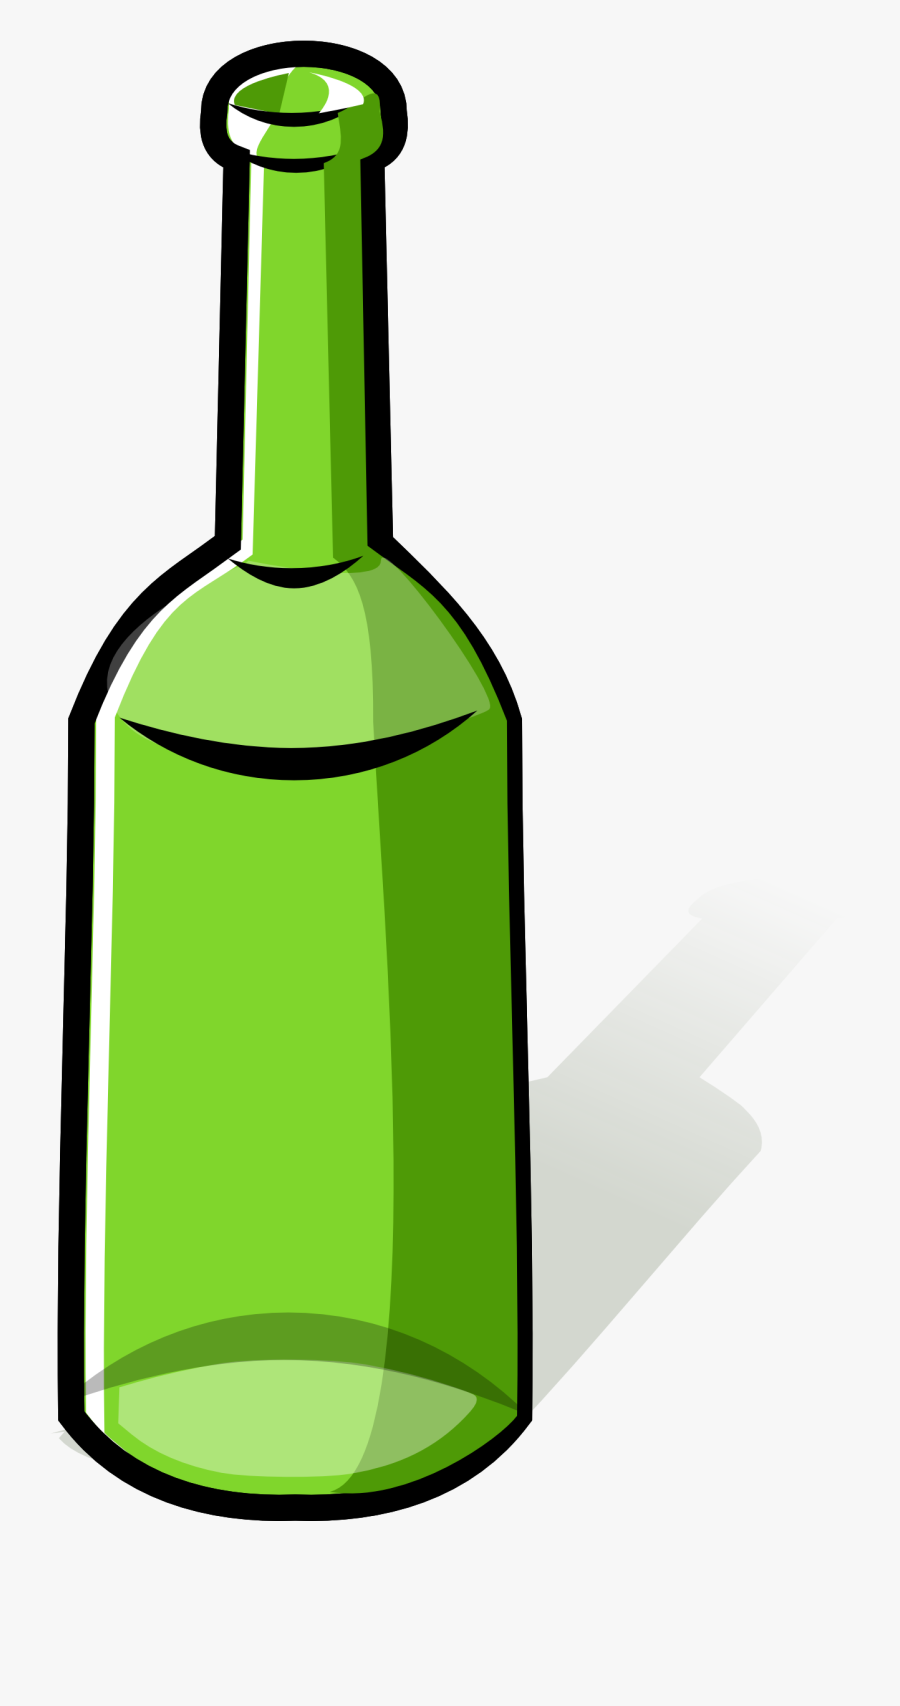 Bottle Clipart - Green Bottle Clipart, Transparent Clipart